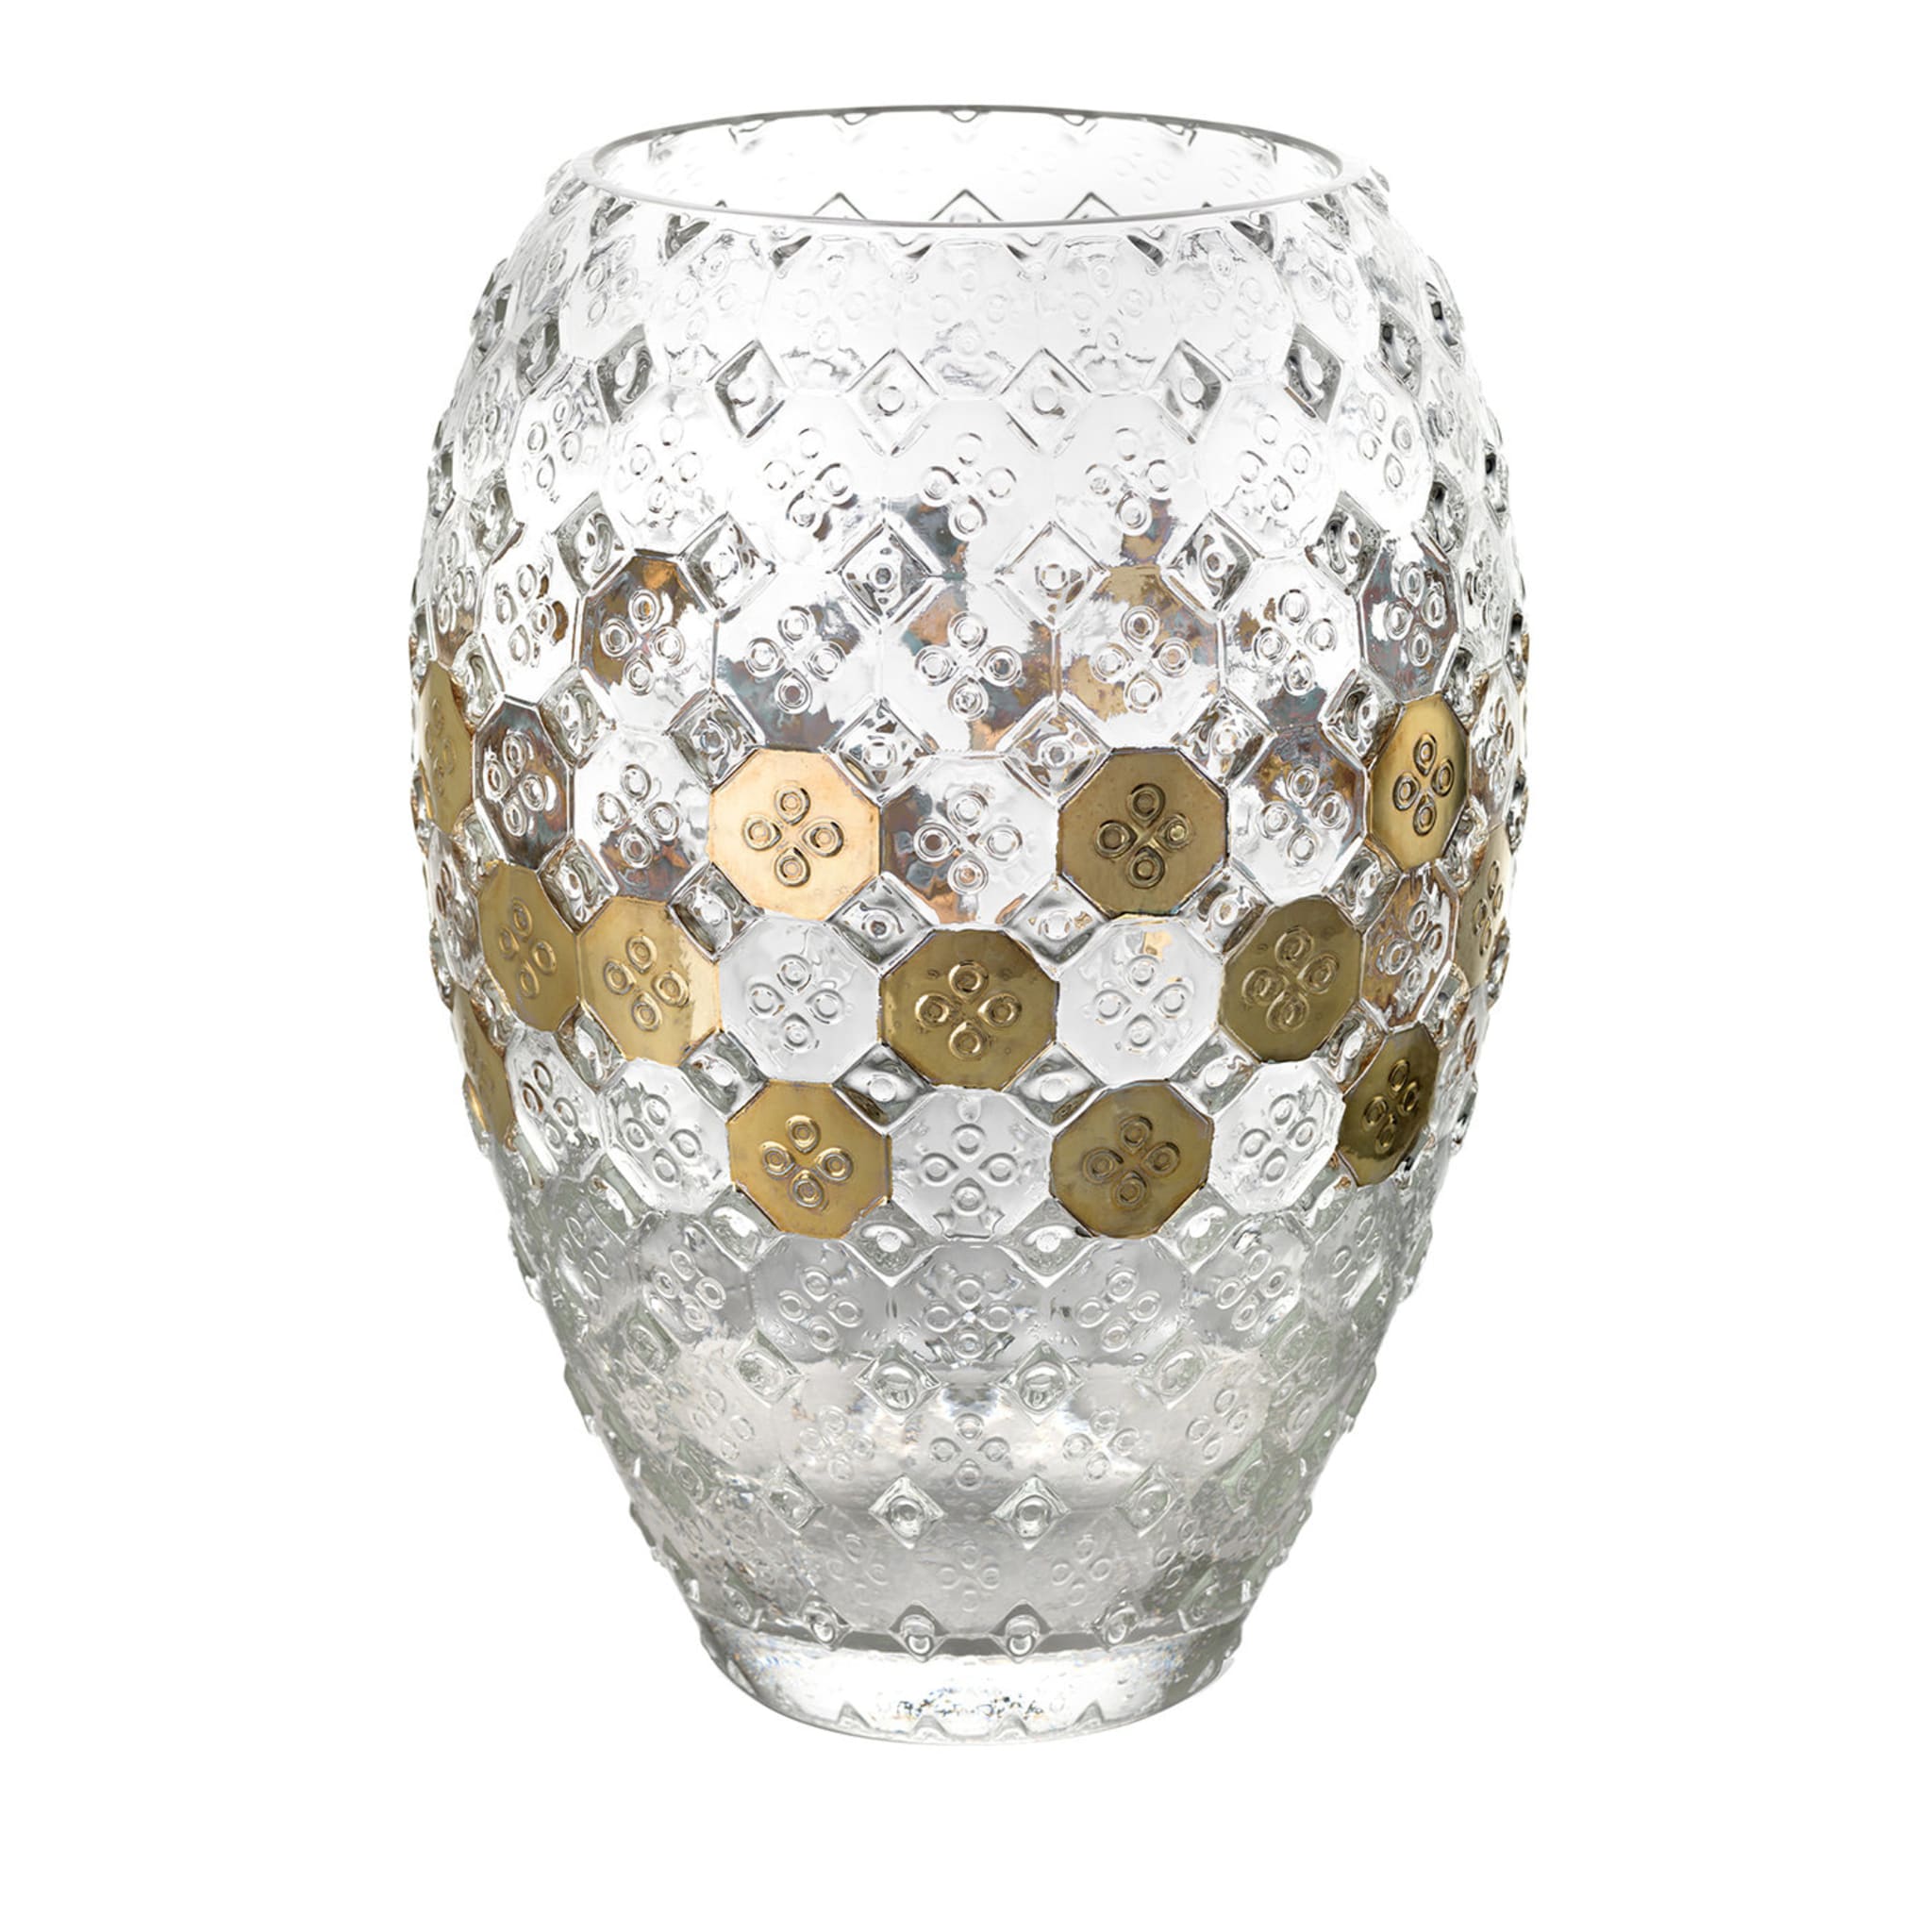 Sixties Golden Glass Vase - Main view